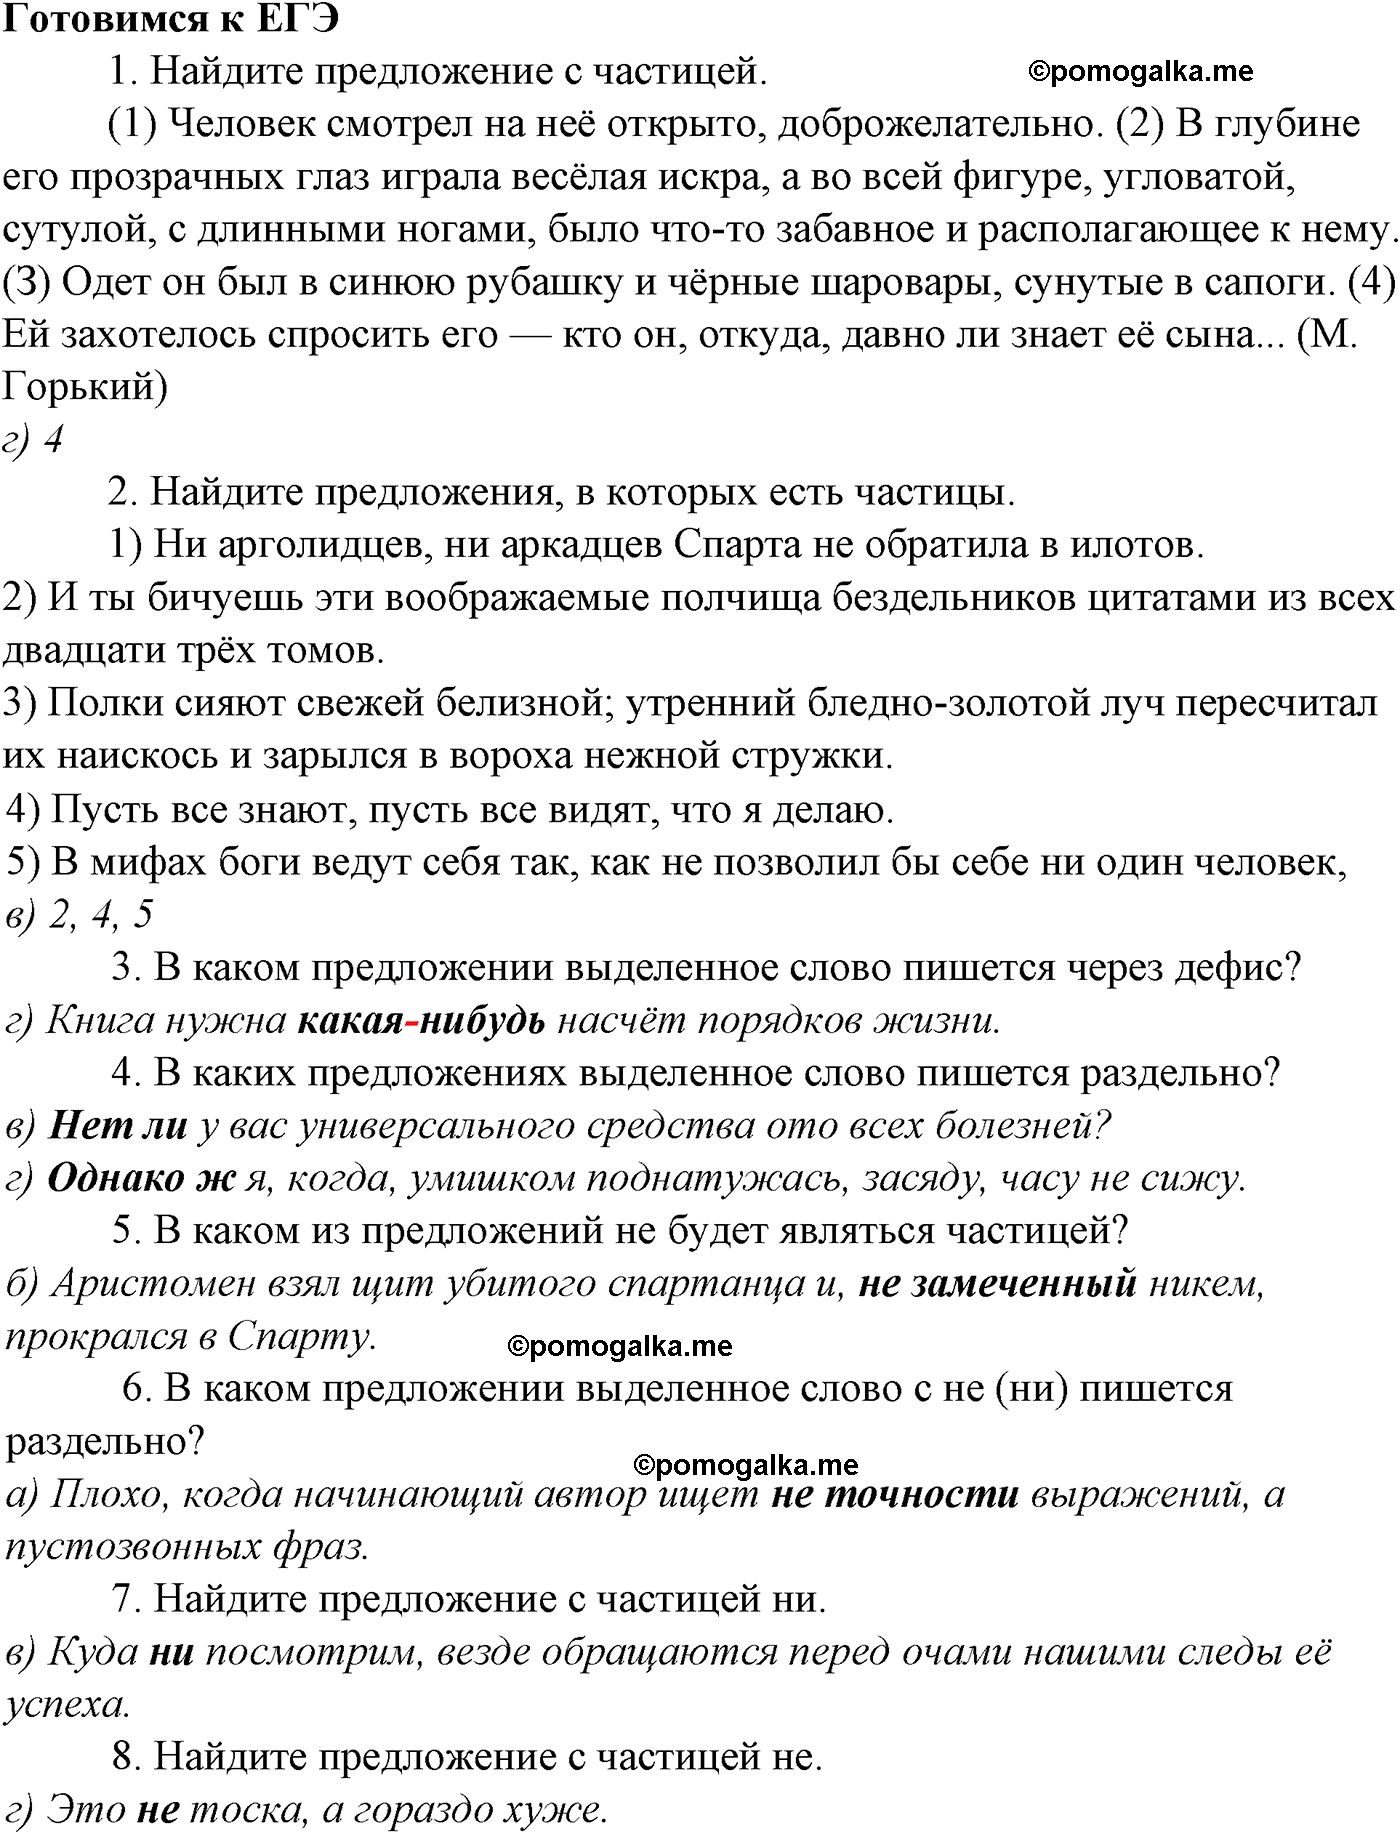 Готовимся к ЕГЭ русский язык 10-11 класс Гольцова